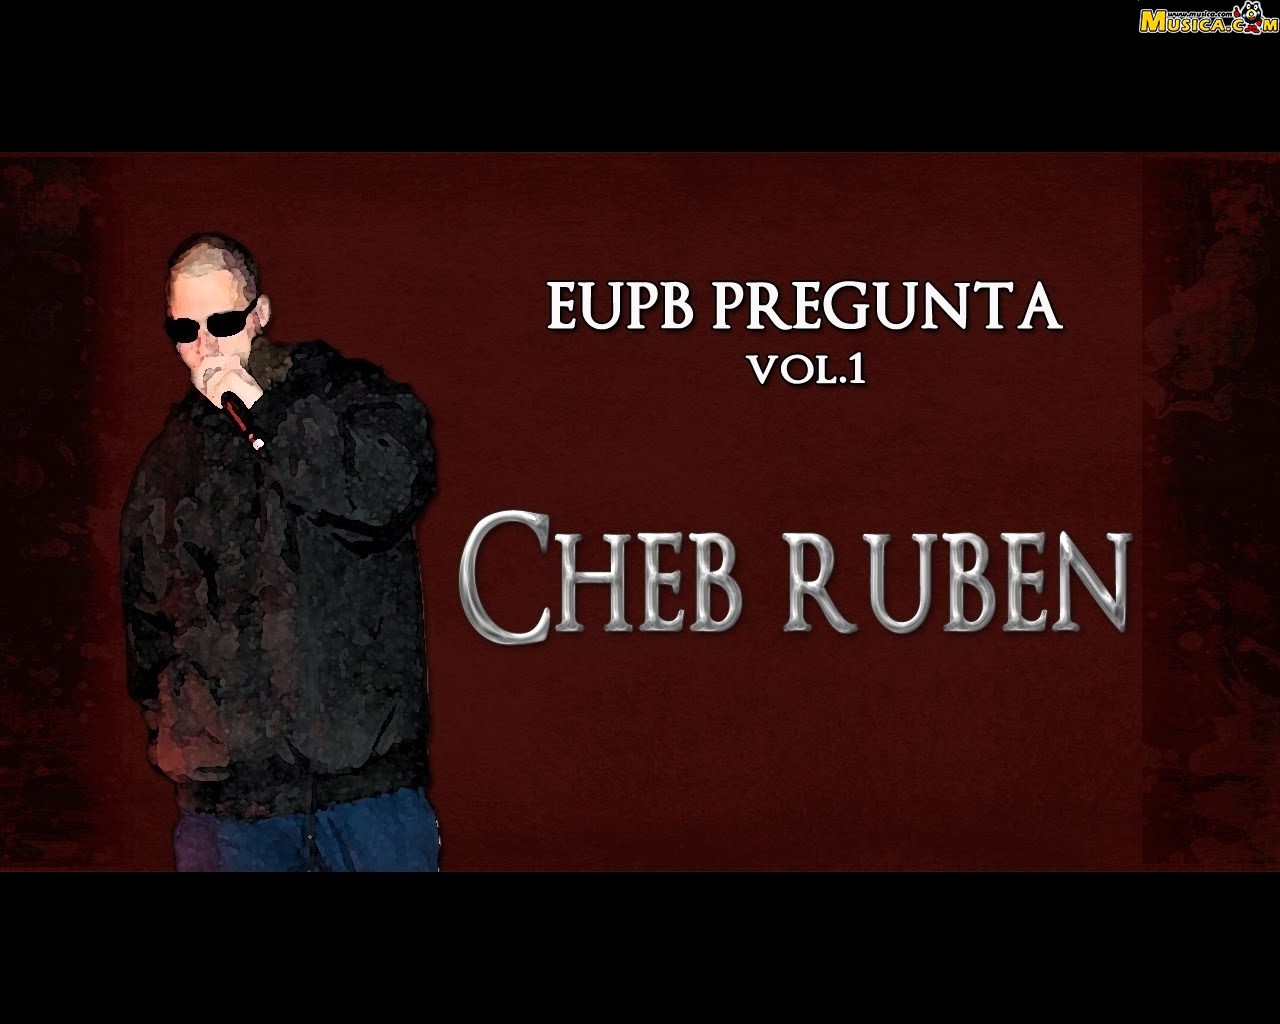 Fondo de pantalla de Cheb Rubën